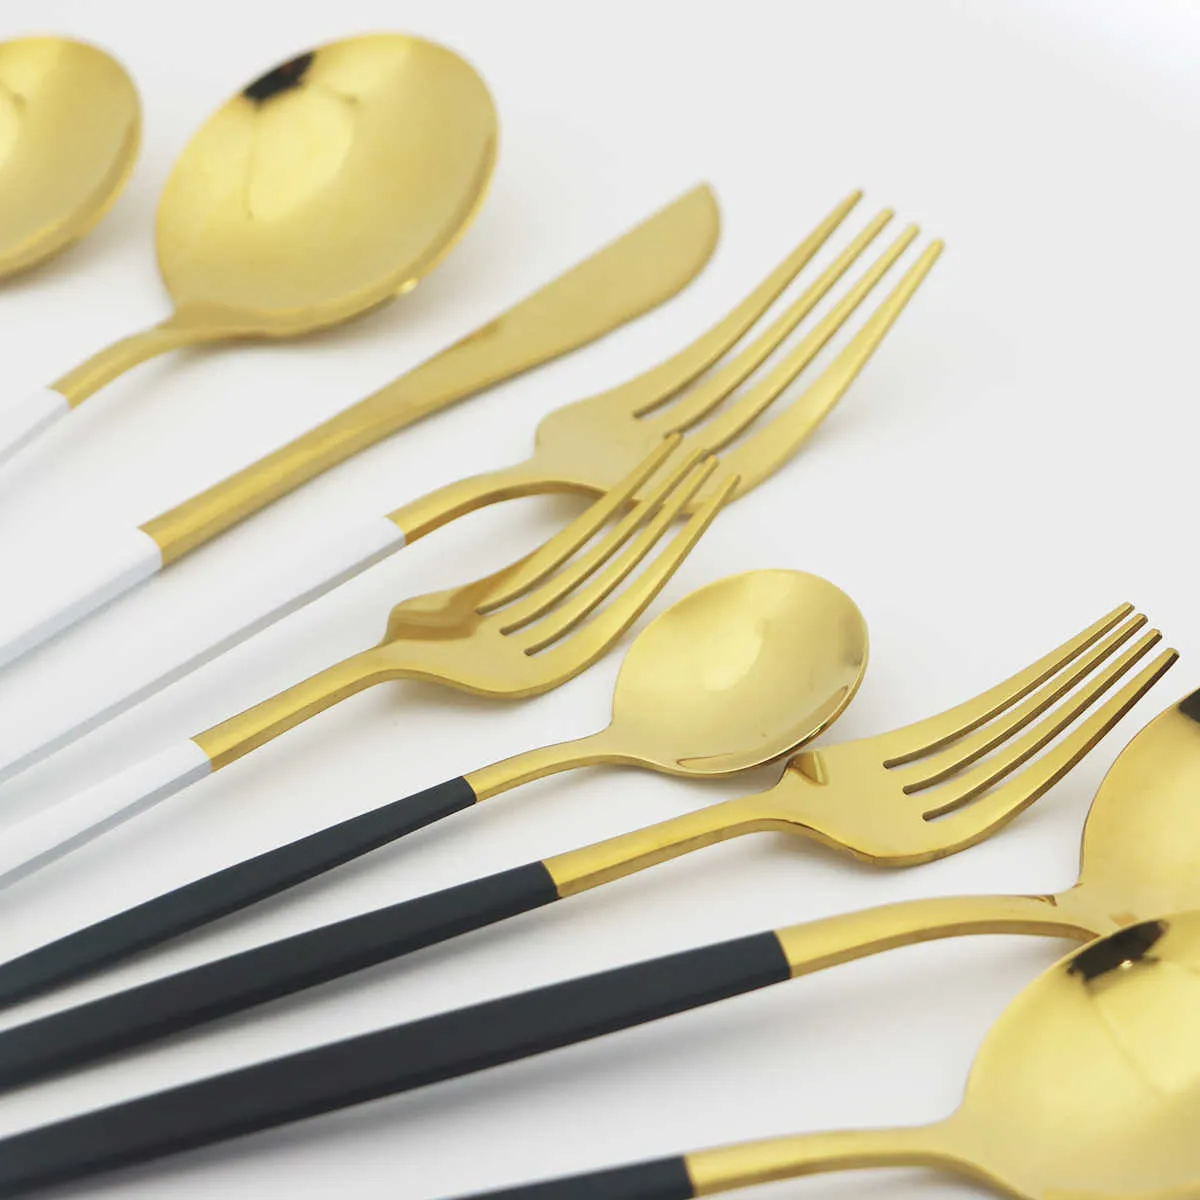 Pink Gold Cutlery Set Stainless Steel Dinnerware Knives Forks Coffee Spoons Flatware Kitchen Dinner Tableware 211023278n